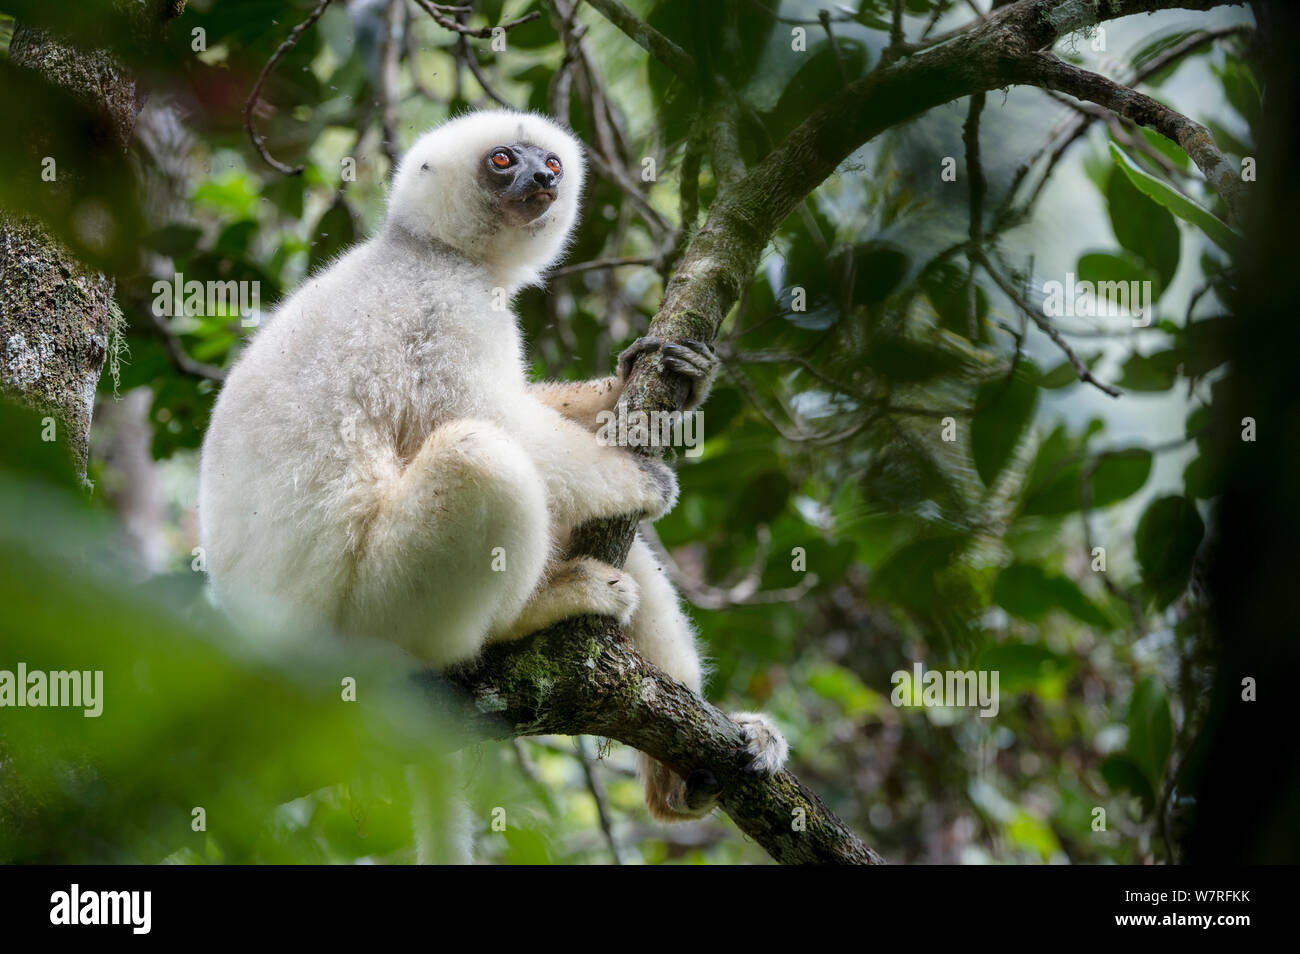 Mâle adulte Propithèque soyeux (Propithecus candidus) dans la région de couvert forestier. Le Parc National de Marojejy, au nord est de Madagascar. Critique d'extinction Banque D'Images